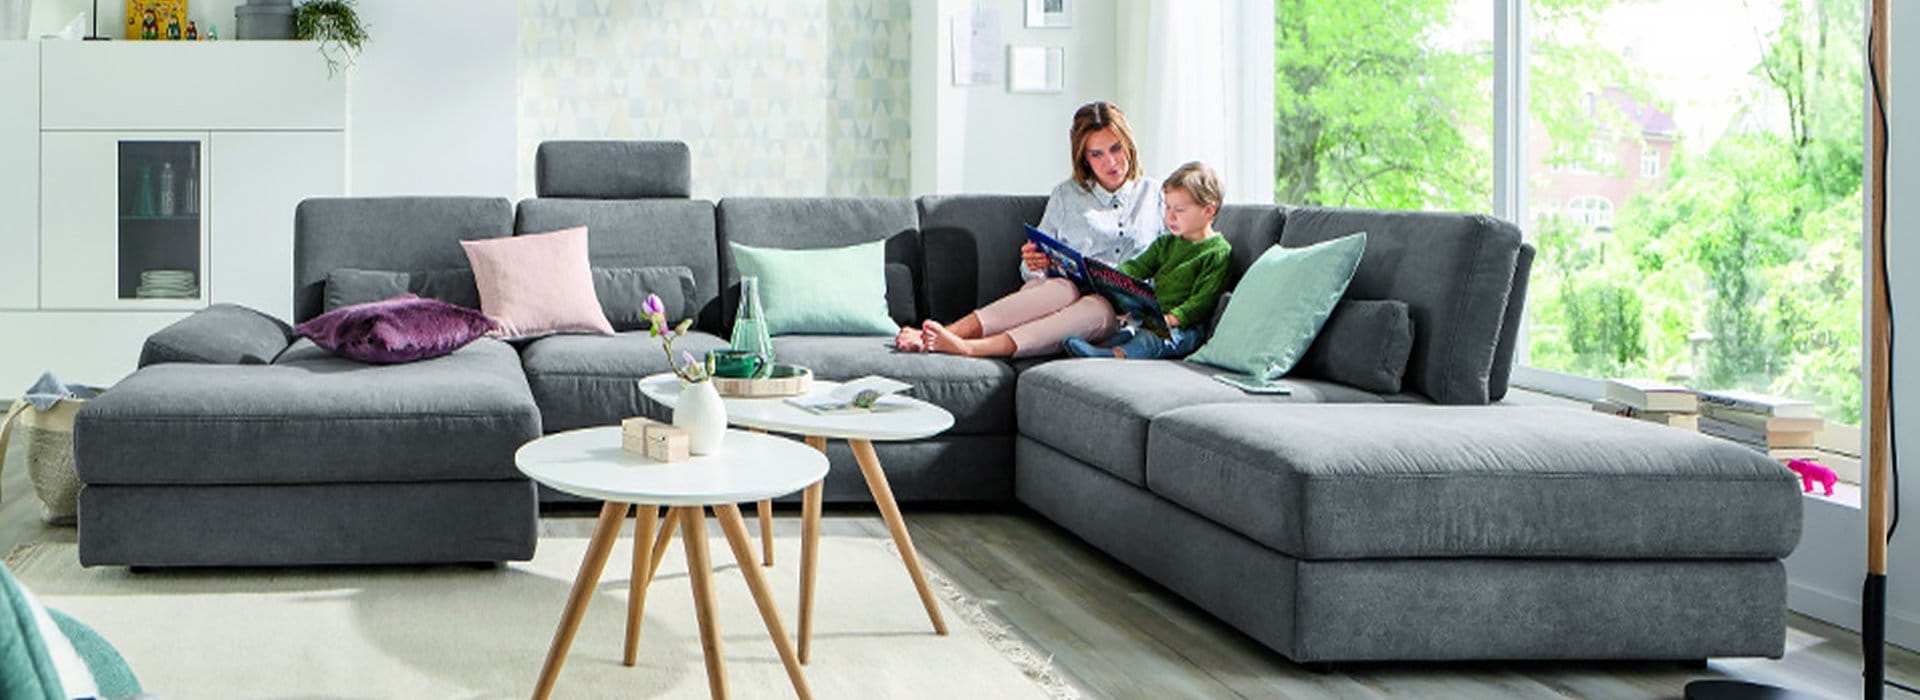 Runde und ovale Couchtische neben einem Sofa mit einer Mutter und einem Kind